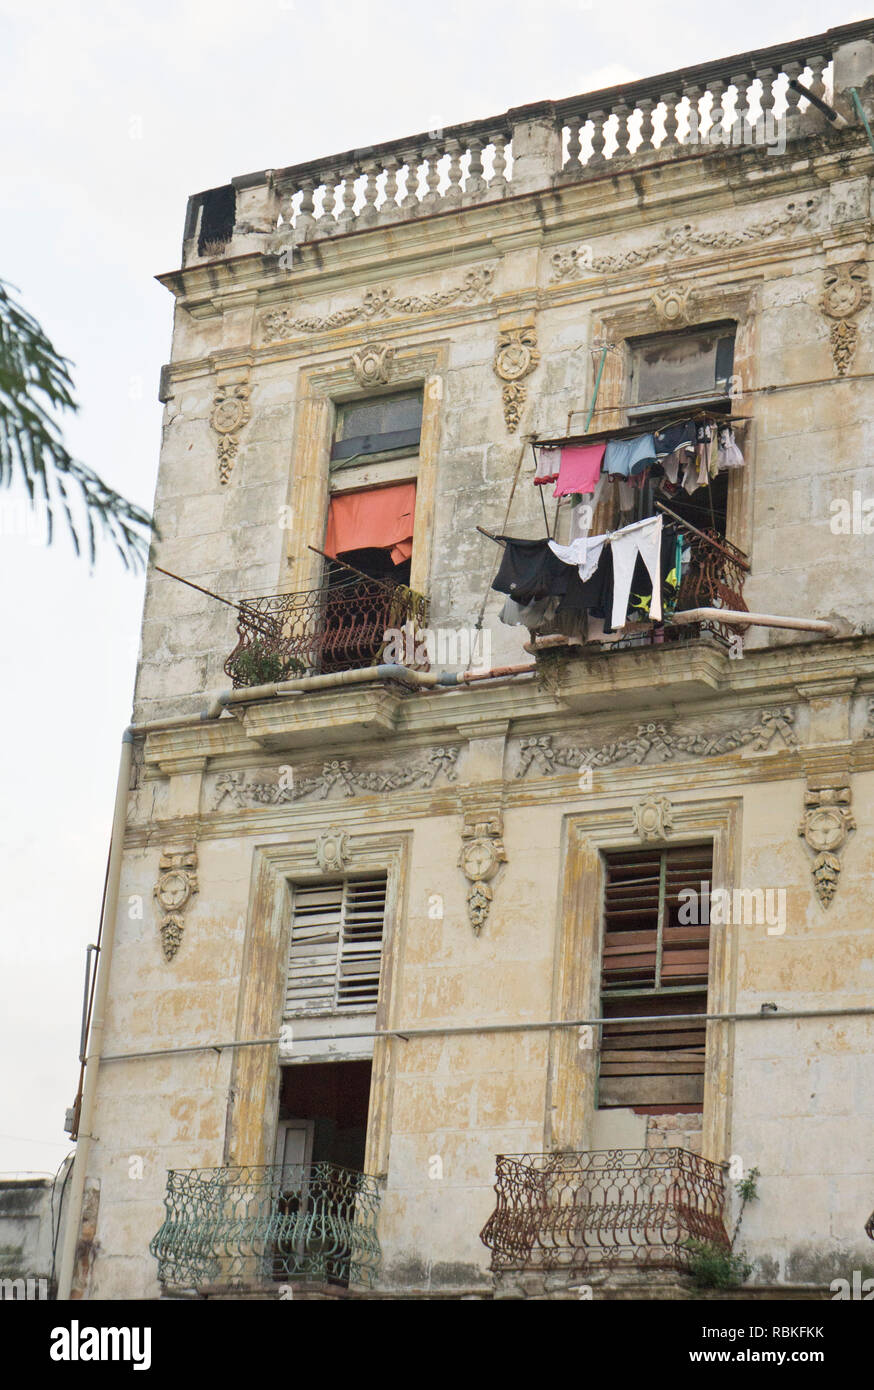 Servicio de lavandería colgó fuera de windows vista común en la Habana Vieja donde elegantes mansiones fueron confiscadas para Apartments & fachadas extrañamente conservados por descuido Foto de stock